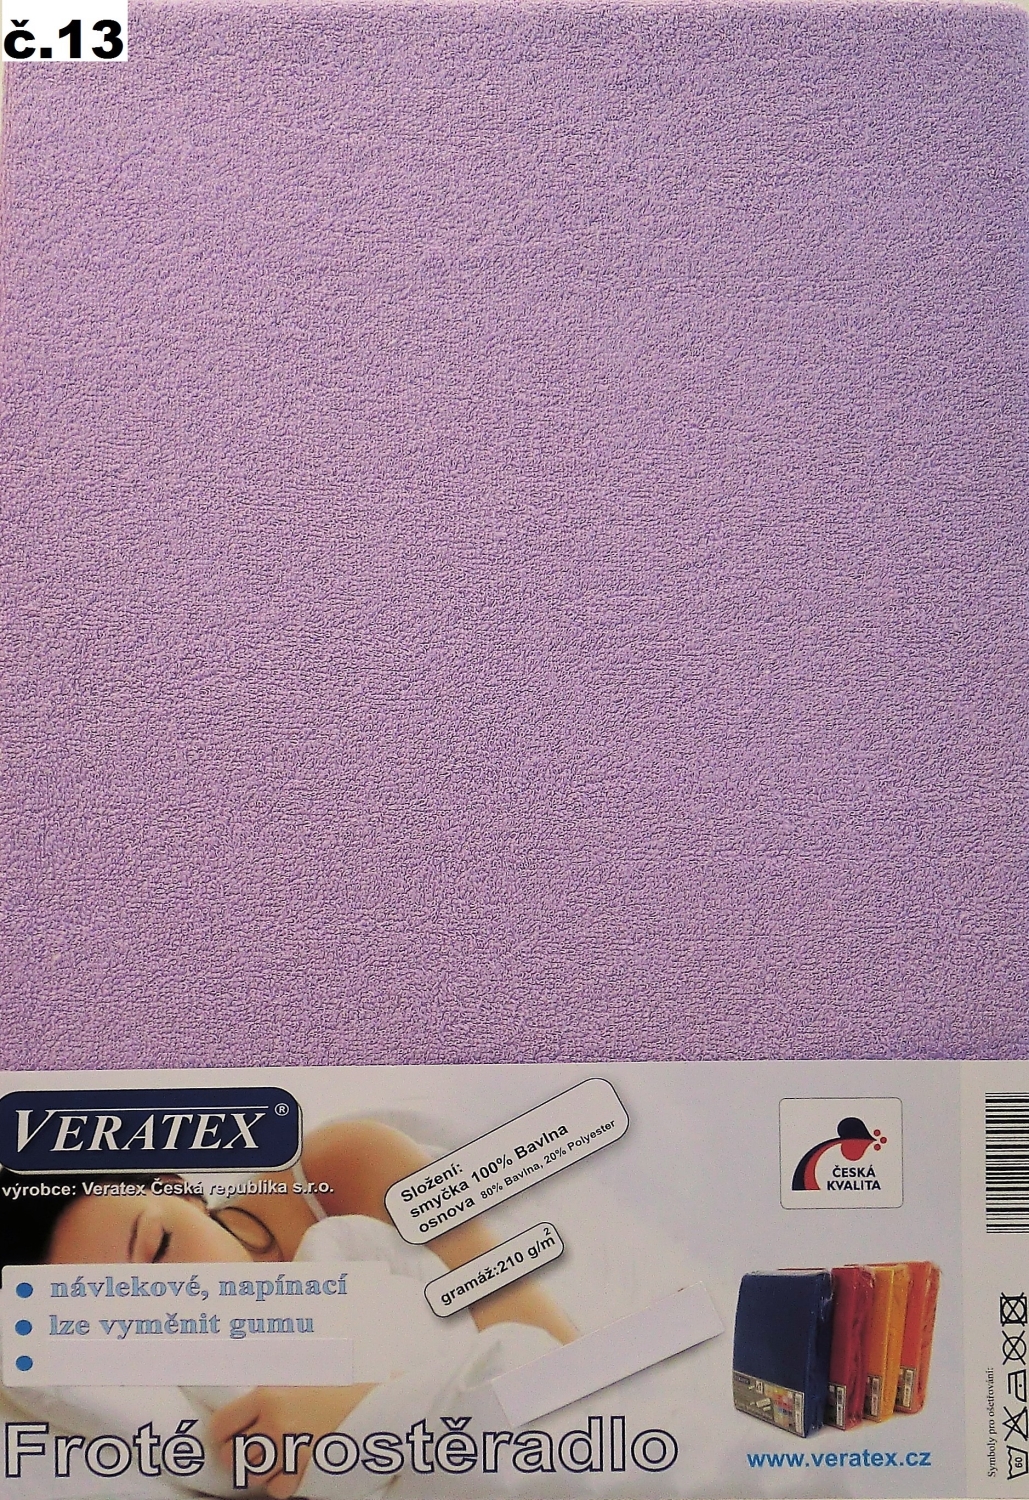 Veratex Froté prostěradlo jednolůžko 90x200/20cm (č.13-fialková)